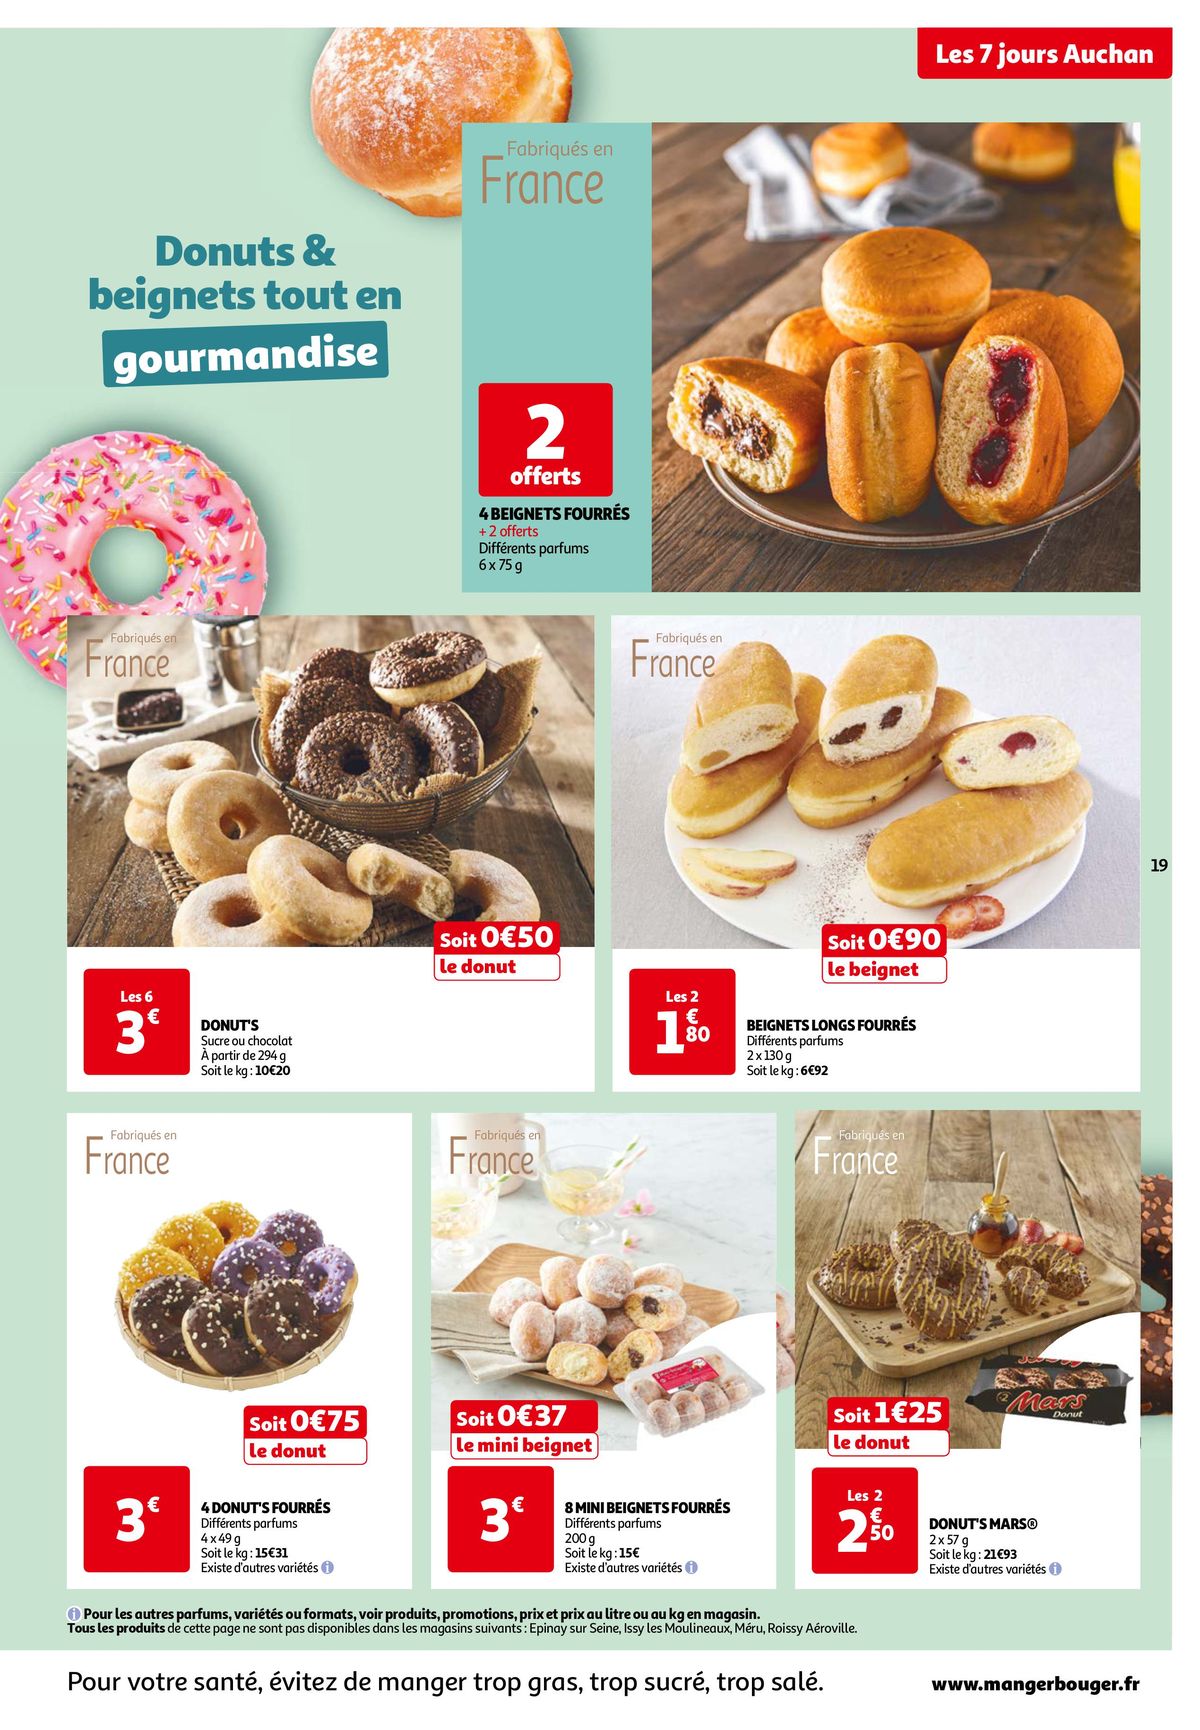 Catalogue Les 7 jours Auchan, c'est maintenant !, page 00019